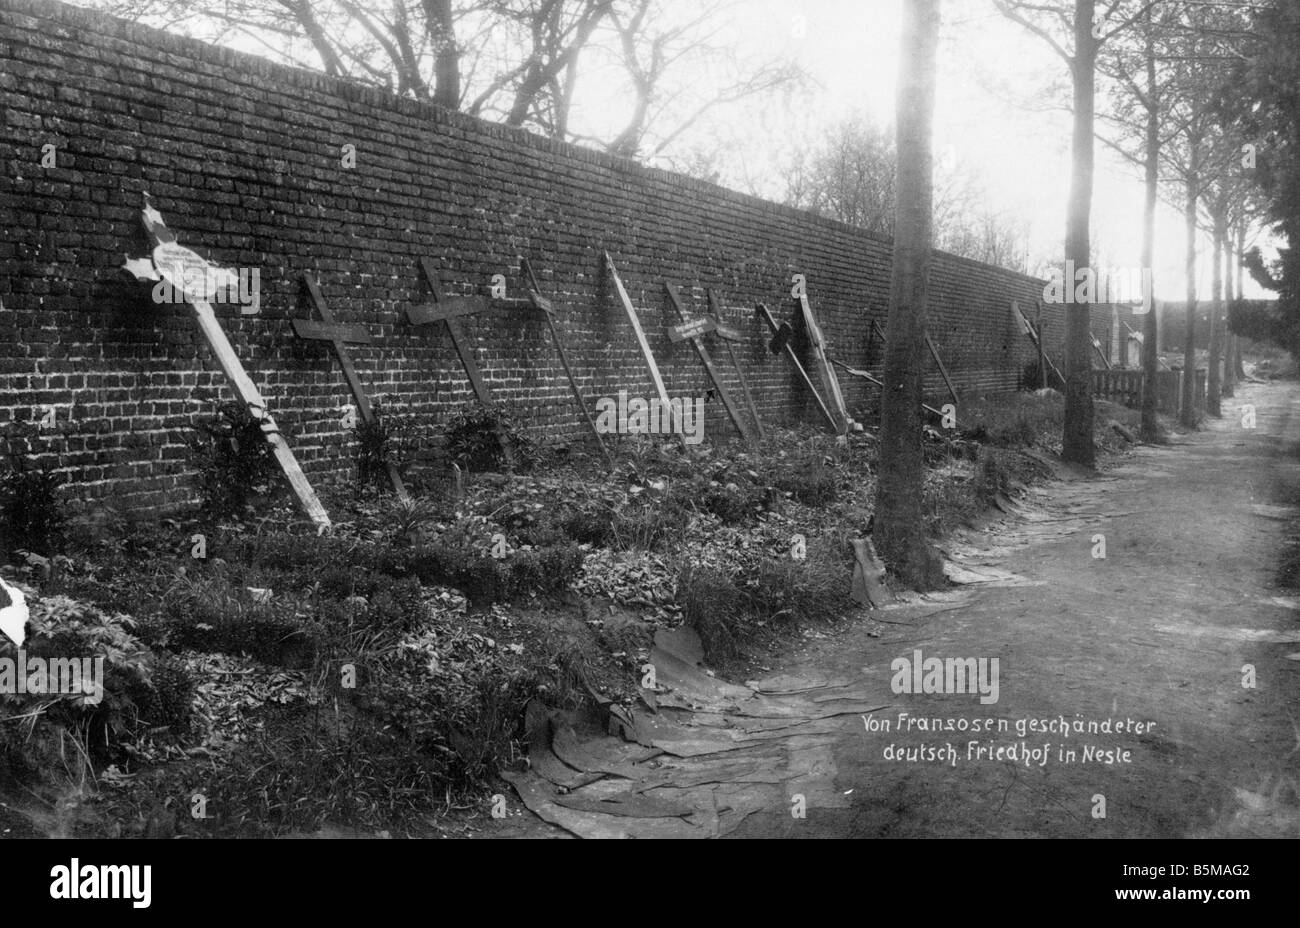 2 G55 W1 1918 3 WWI verletzt Friedhof in Nesle Geschichte WWI Westfront deutschen Friedhof in Nesle verletzt durch die französischen Nesle D Stockfoto